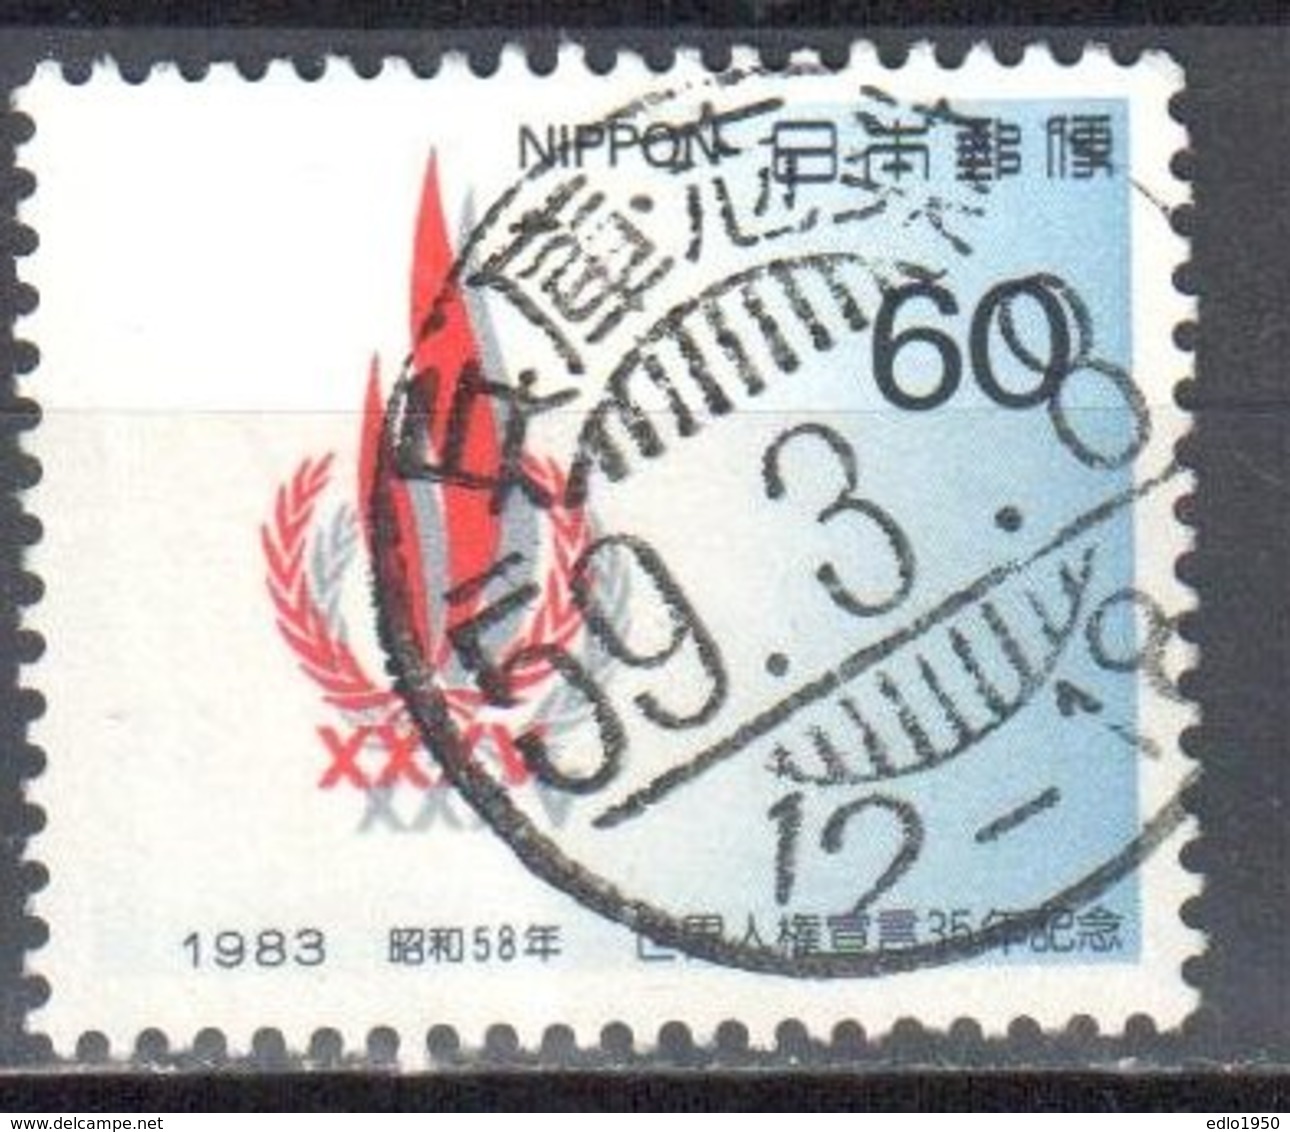 Japan 1983 - Mi.1574 - Used - Used Stamps